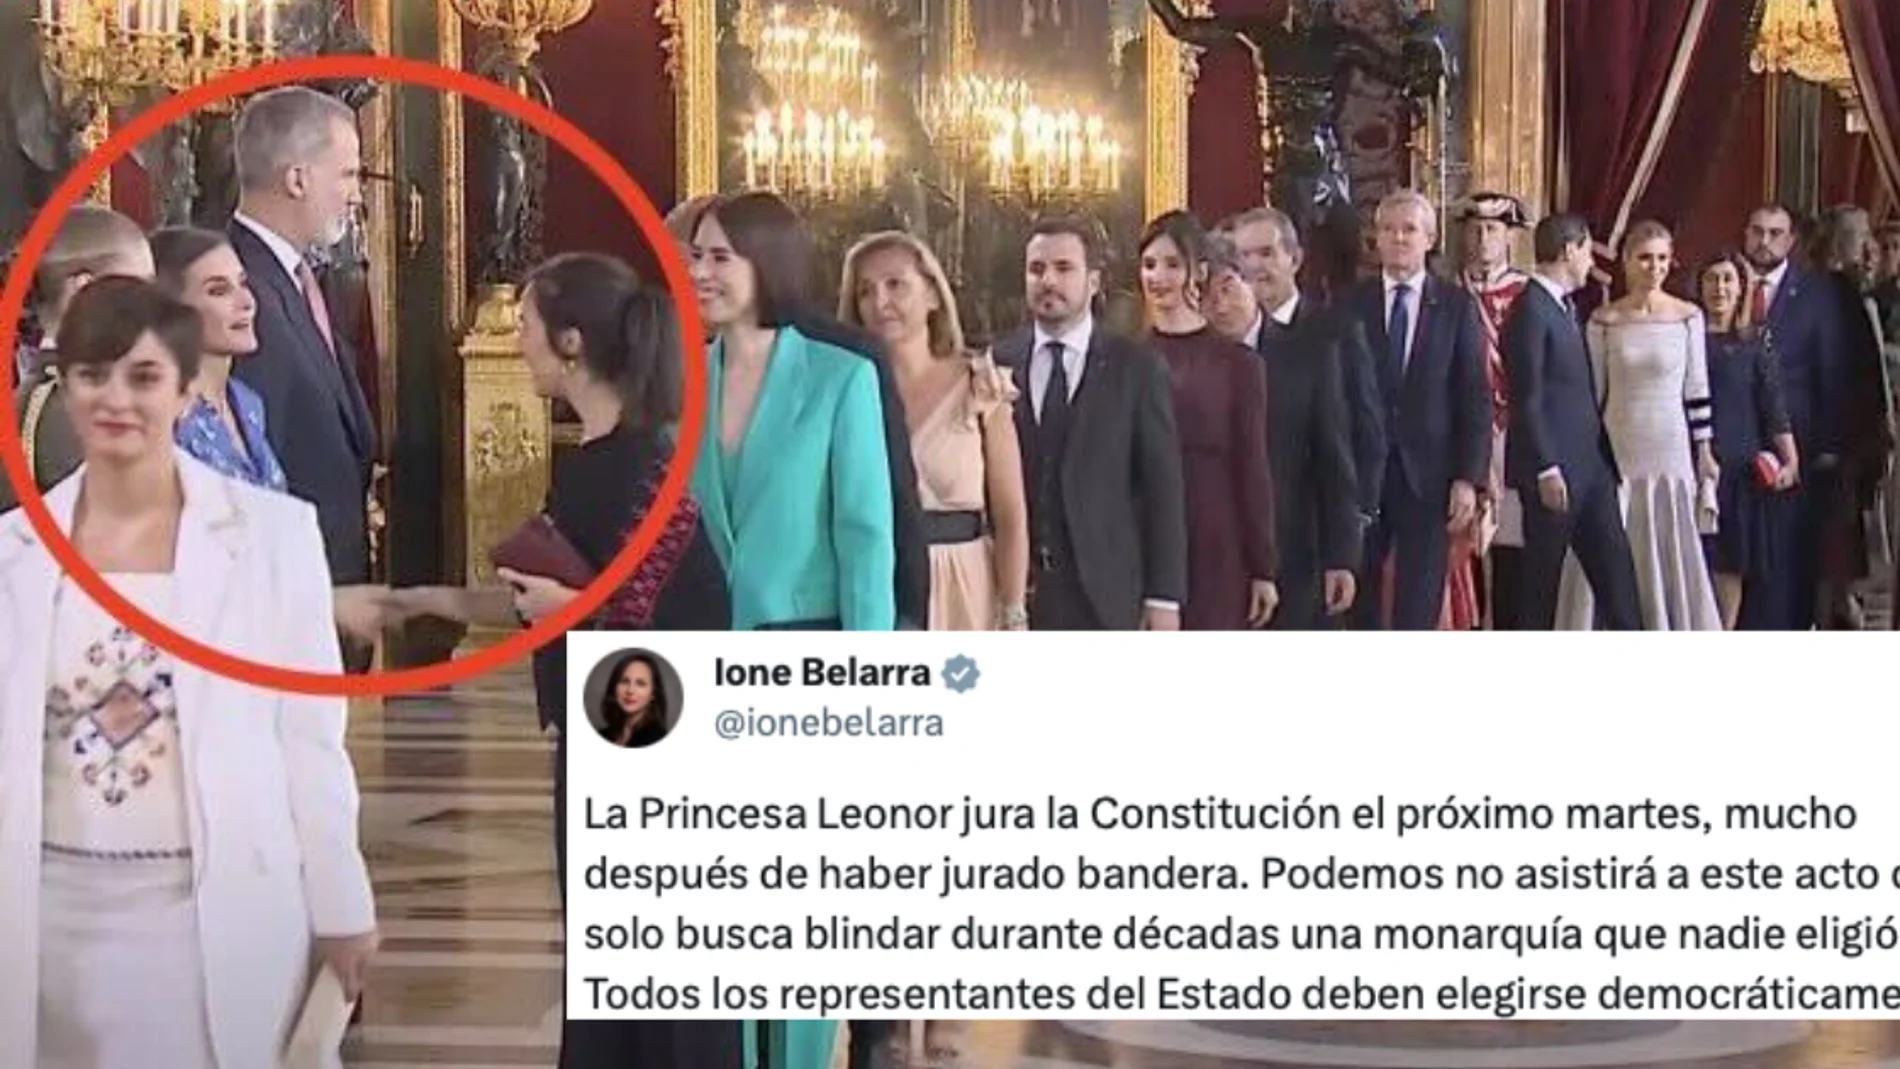 La ministra Ione Belarra durante el besa manos de la fiesta nacional, junto al tweet en el que critica a la jefatura de Estado